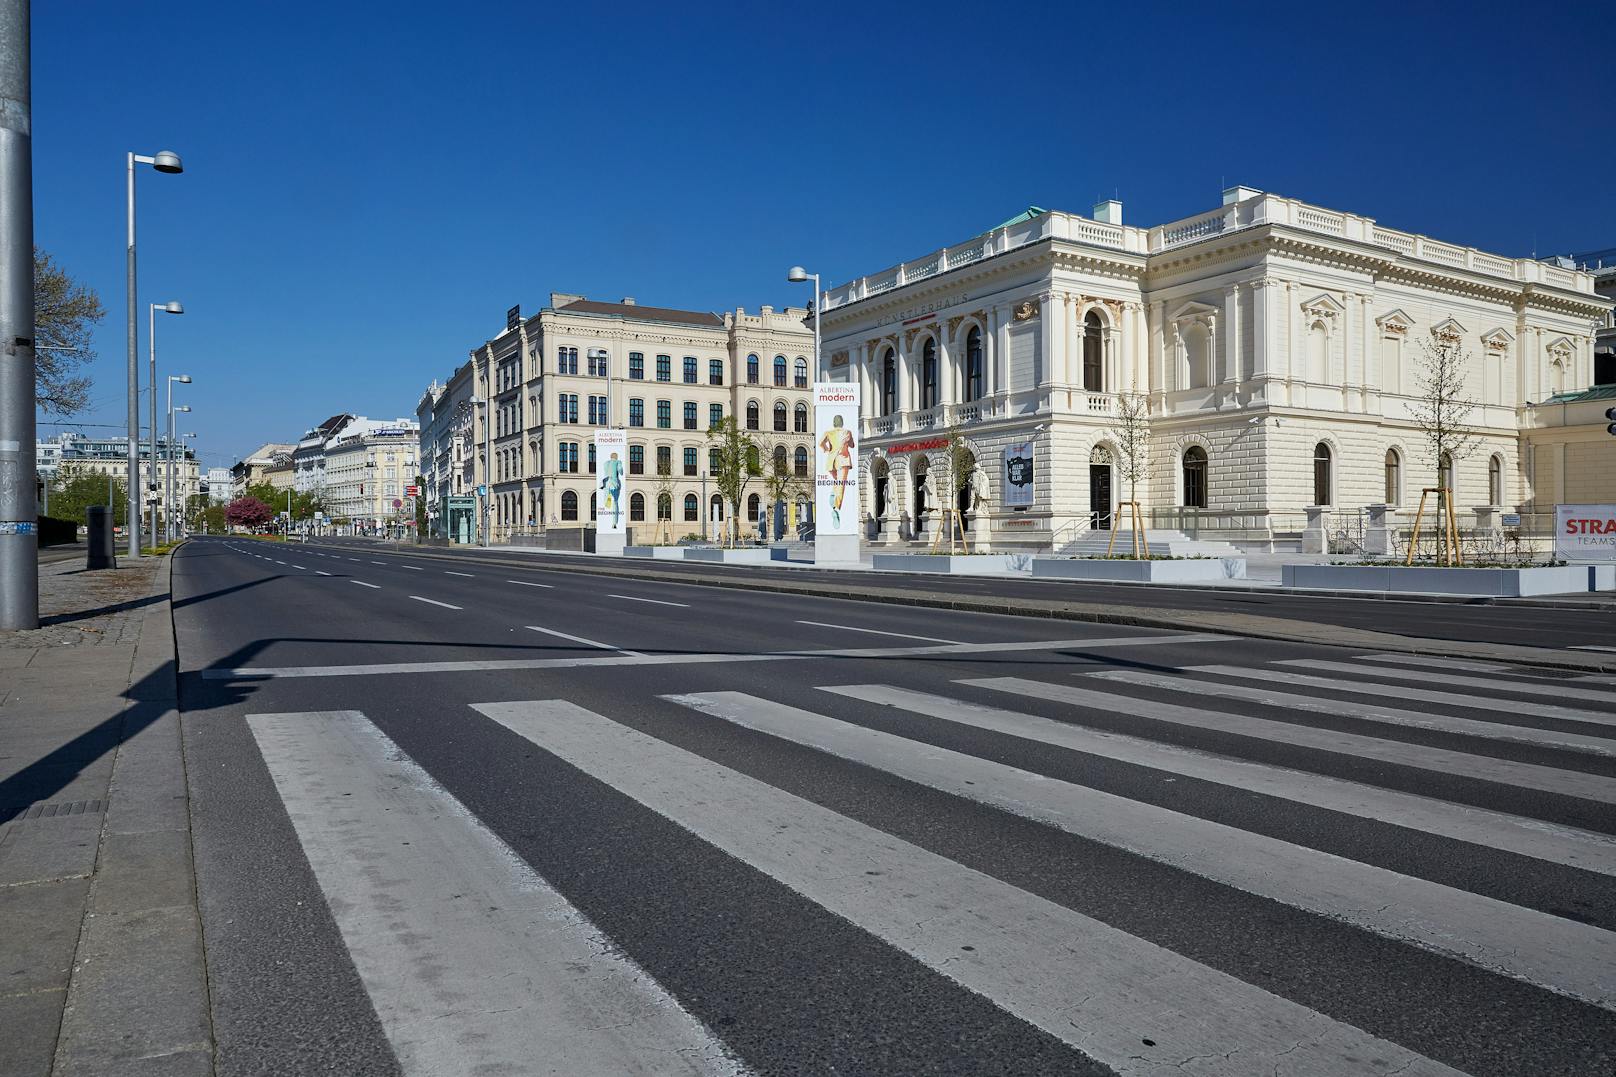 In Wien waren die Straßen im April menschenleer.